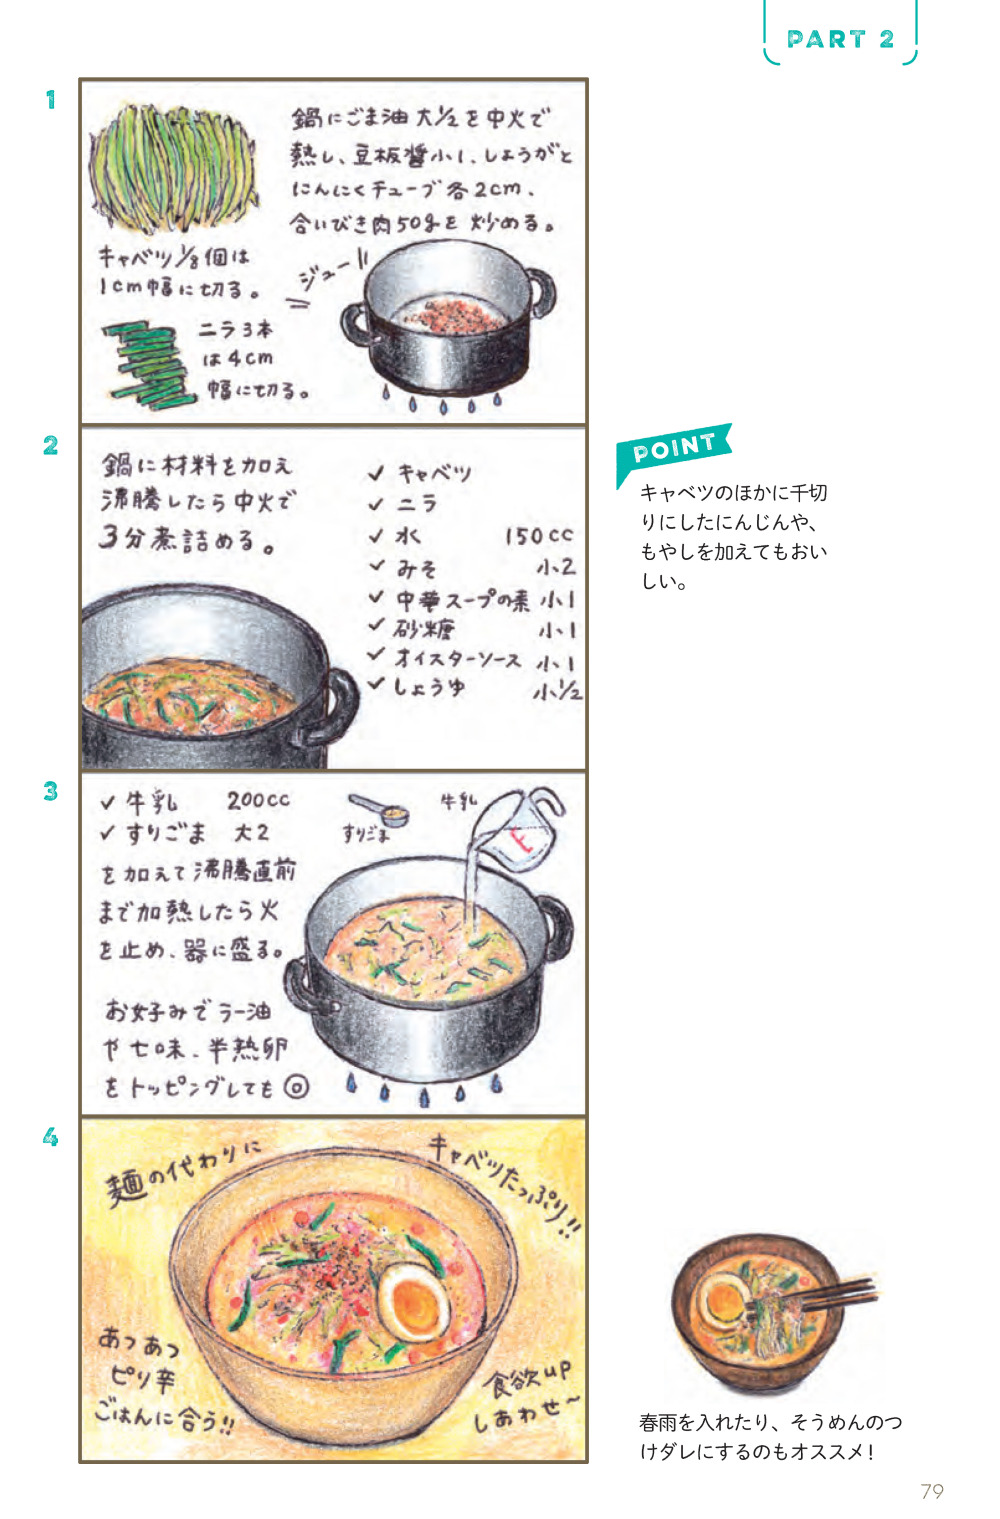 坦々キャベツスープのレシピ